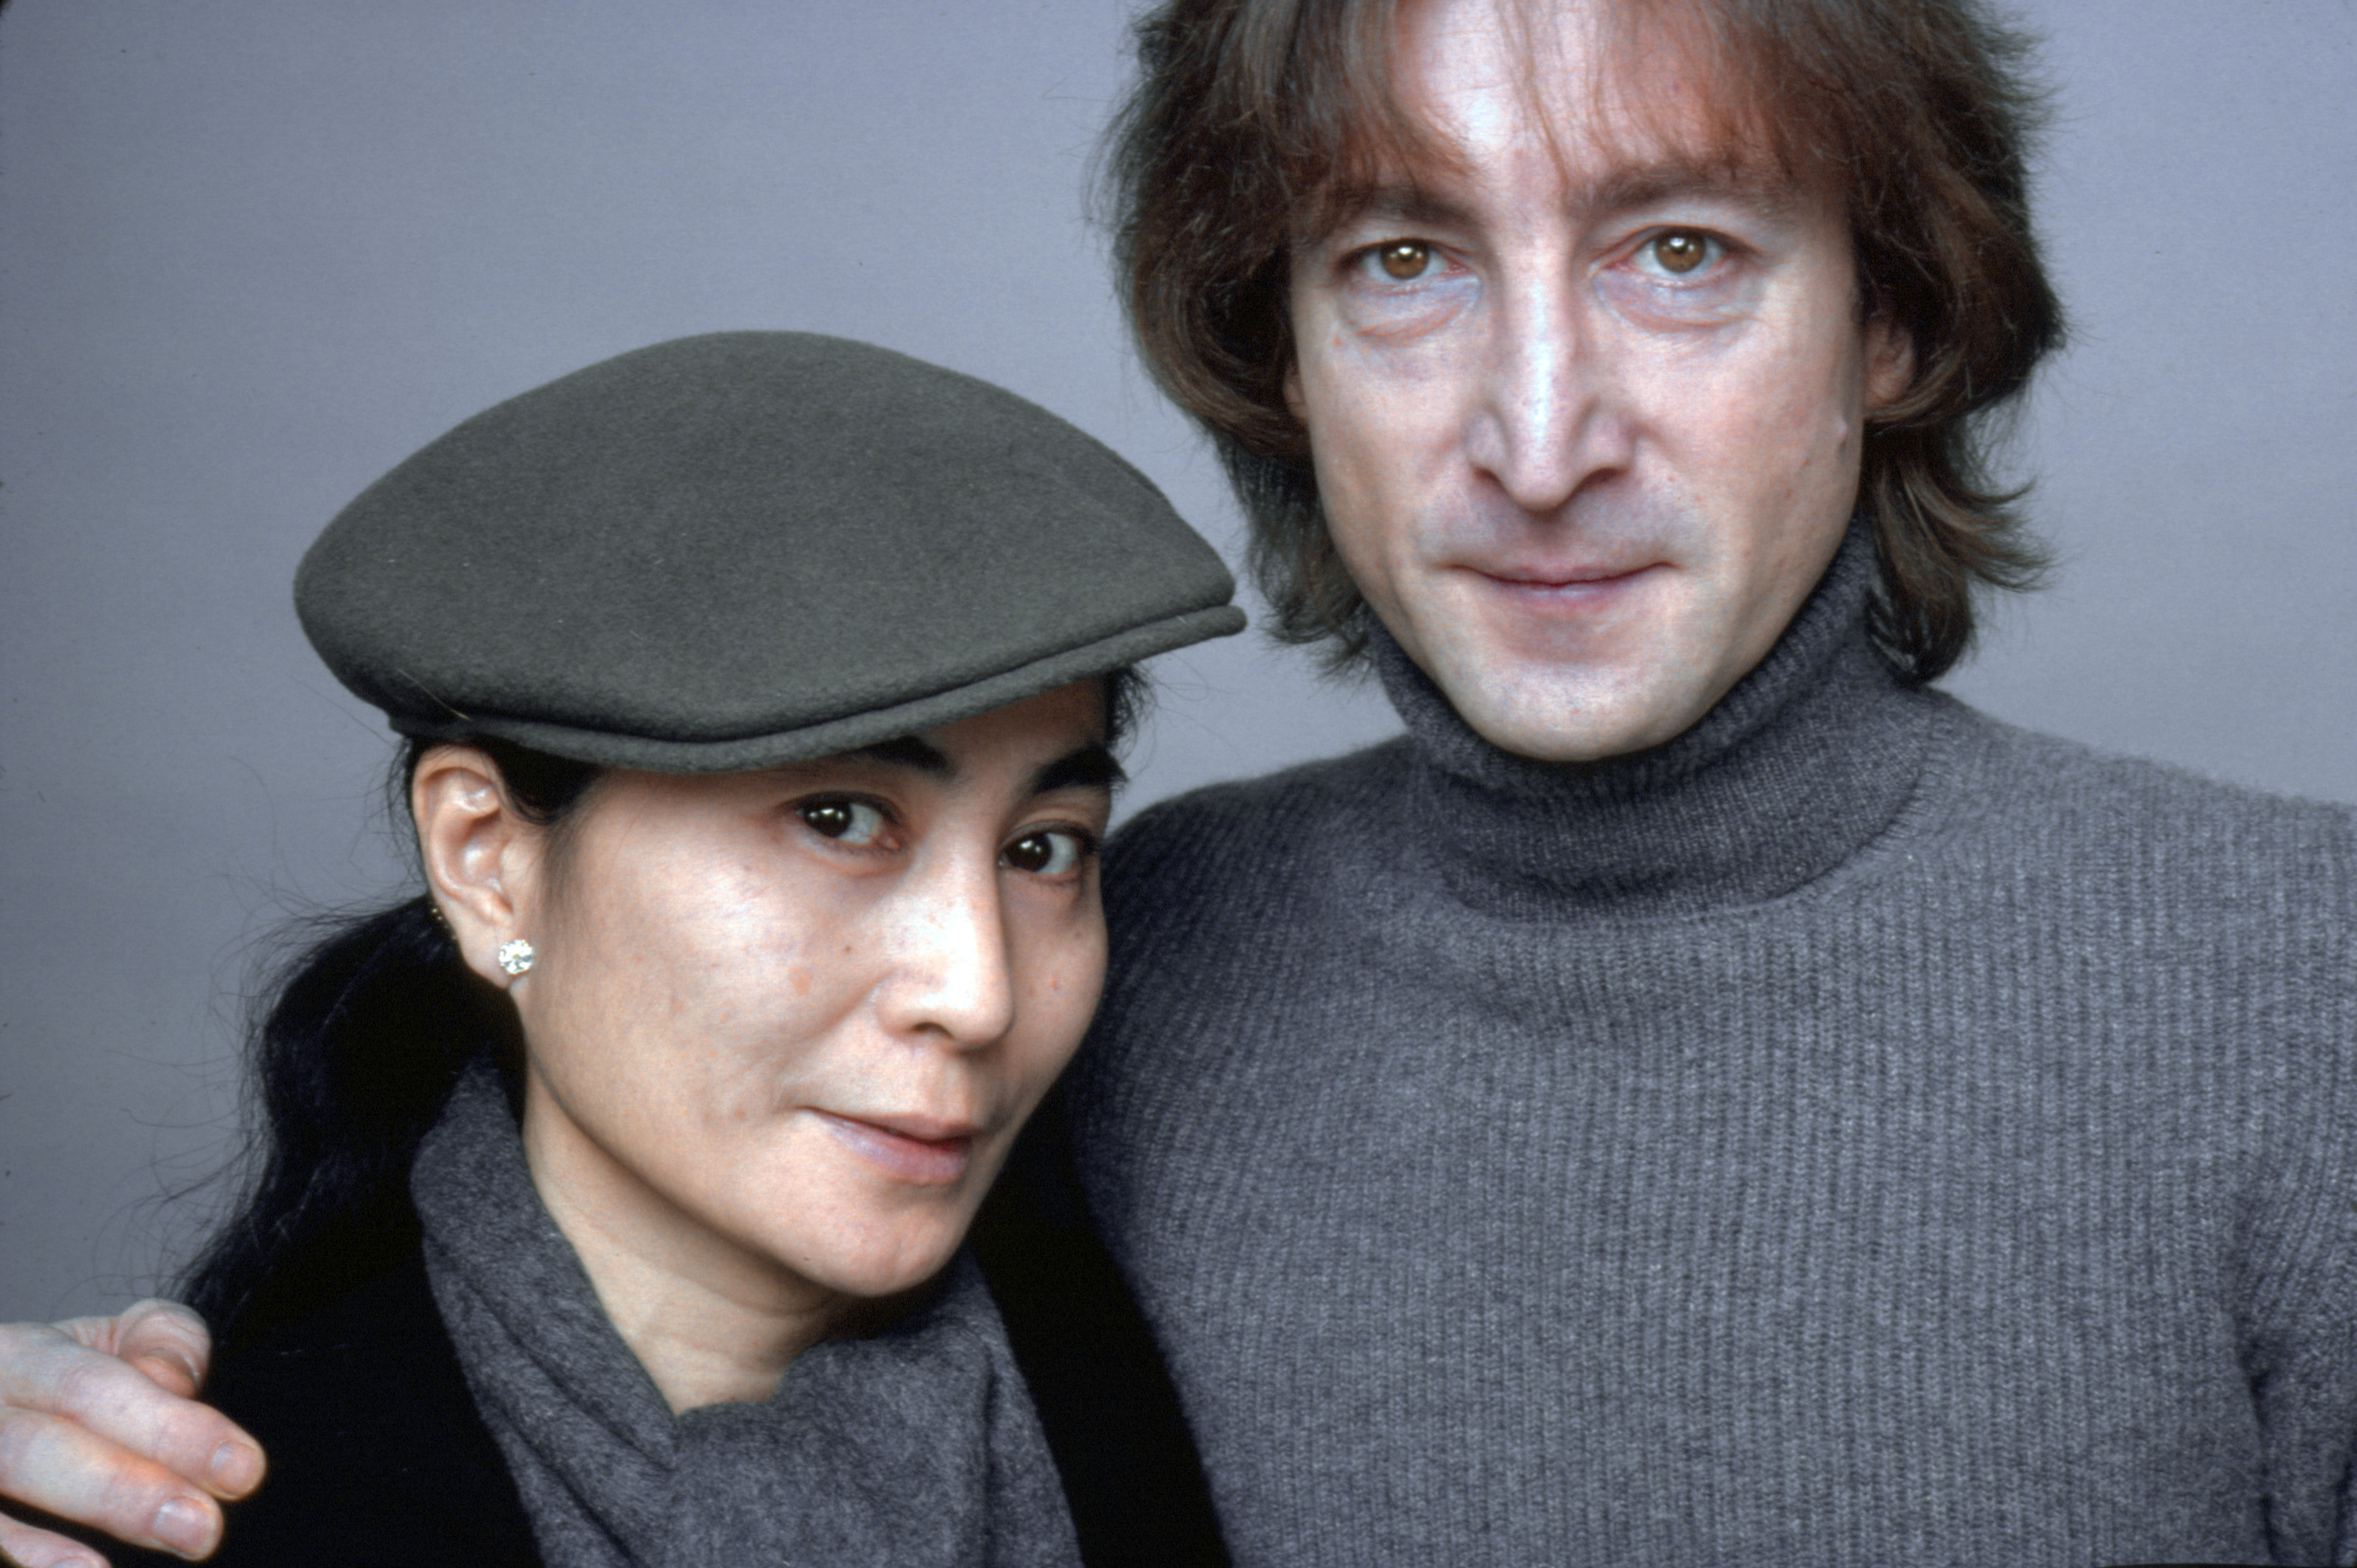 John Lennon with his arm around Yoko Ono